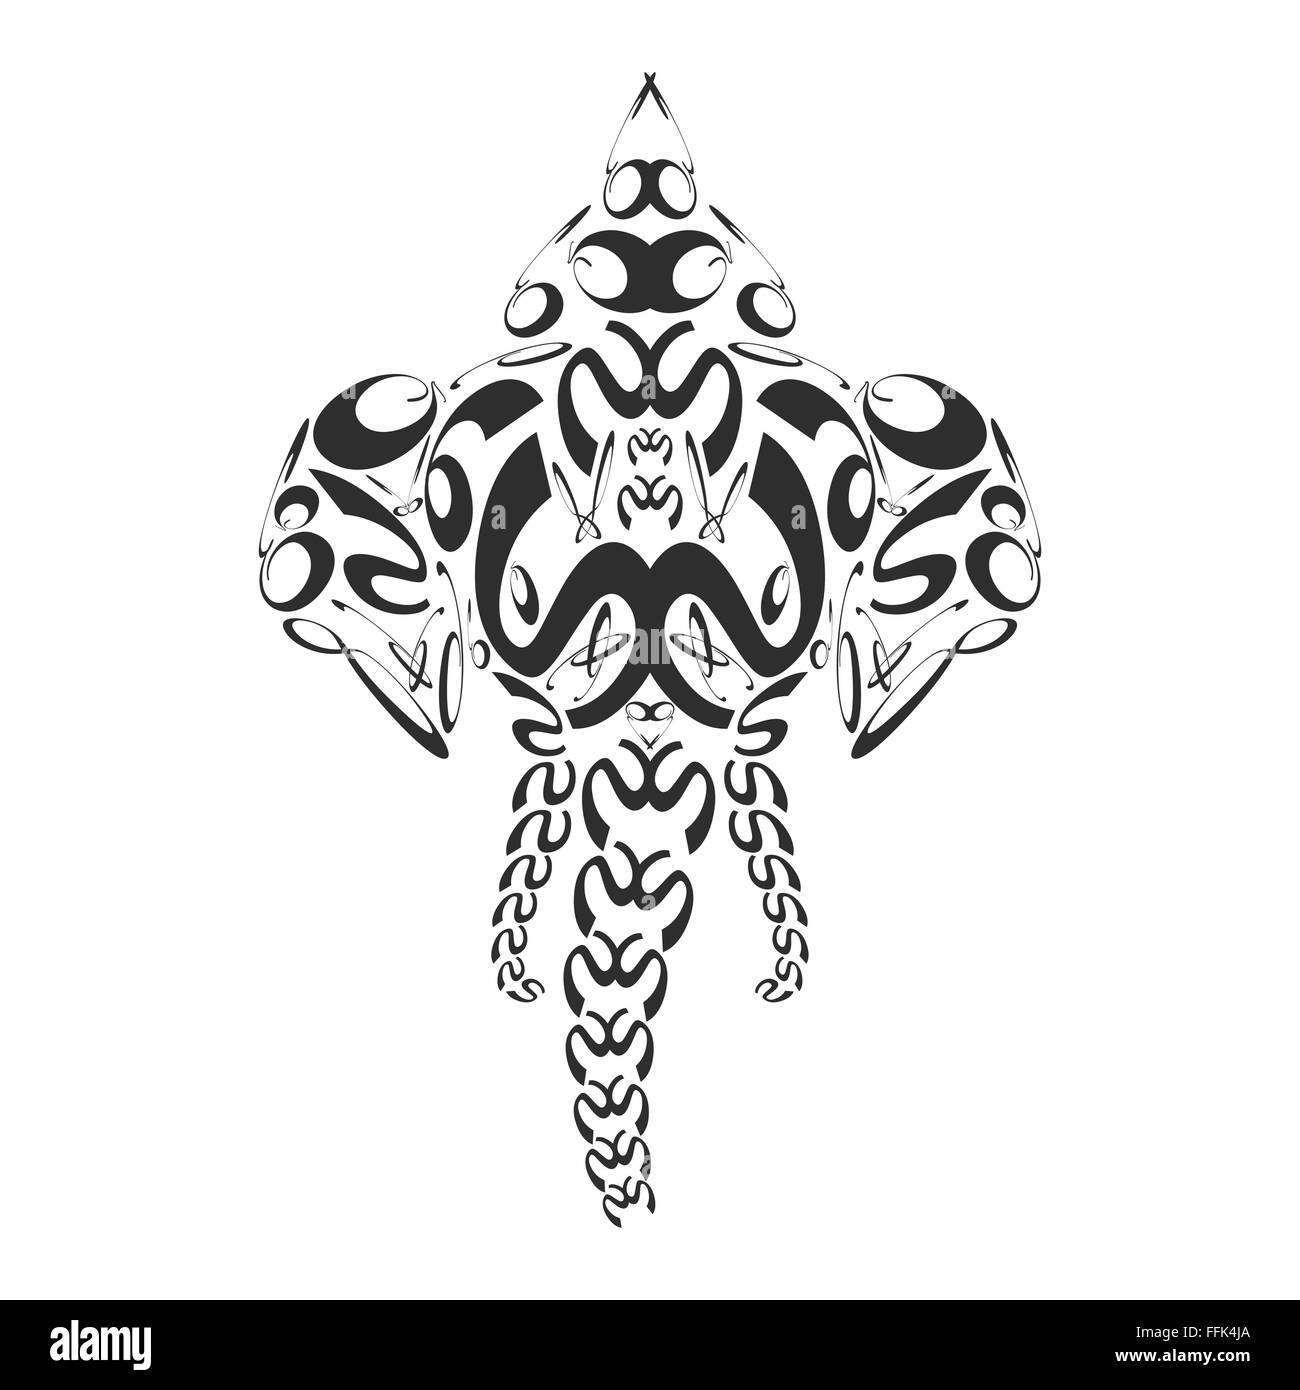 Vector abstract monochrome noir signe tête d'éléphant ganesh art illustration isolé sur fond blanc Illustration de Vecteur